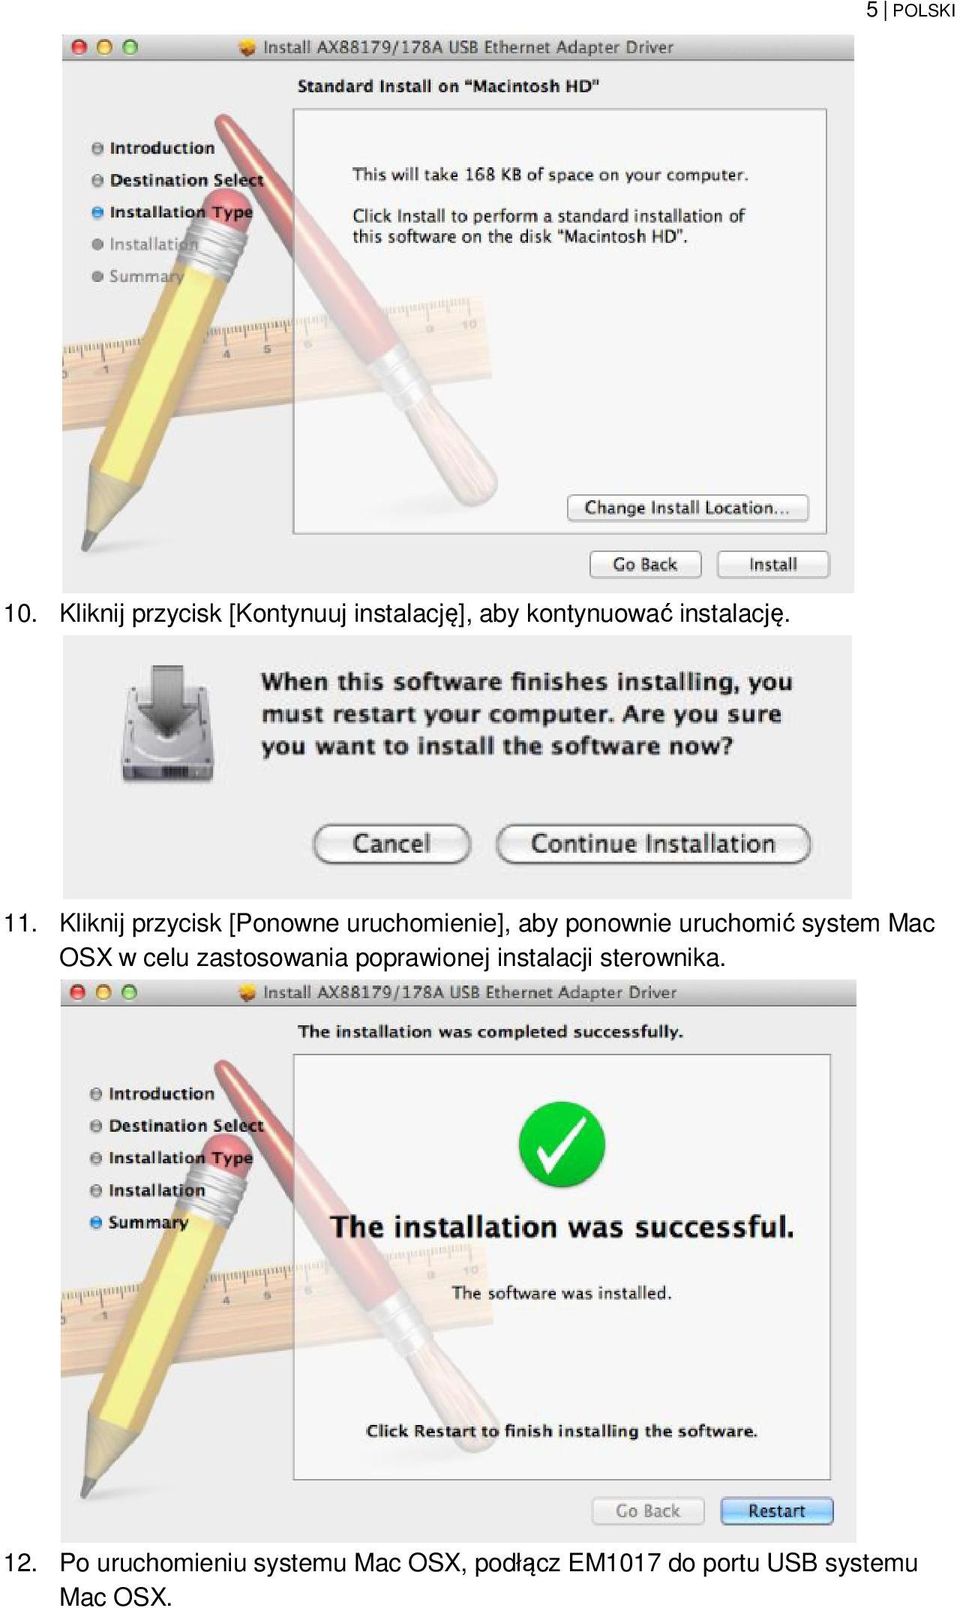 Kliknij przycisk [Ponowne uruchomienie], aby ponownie uruchomić system Mac